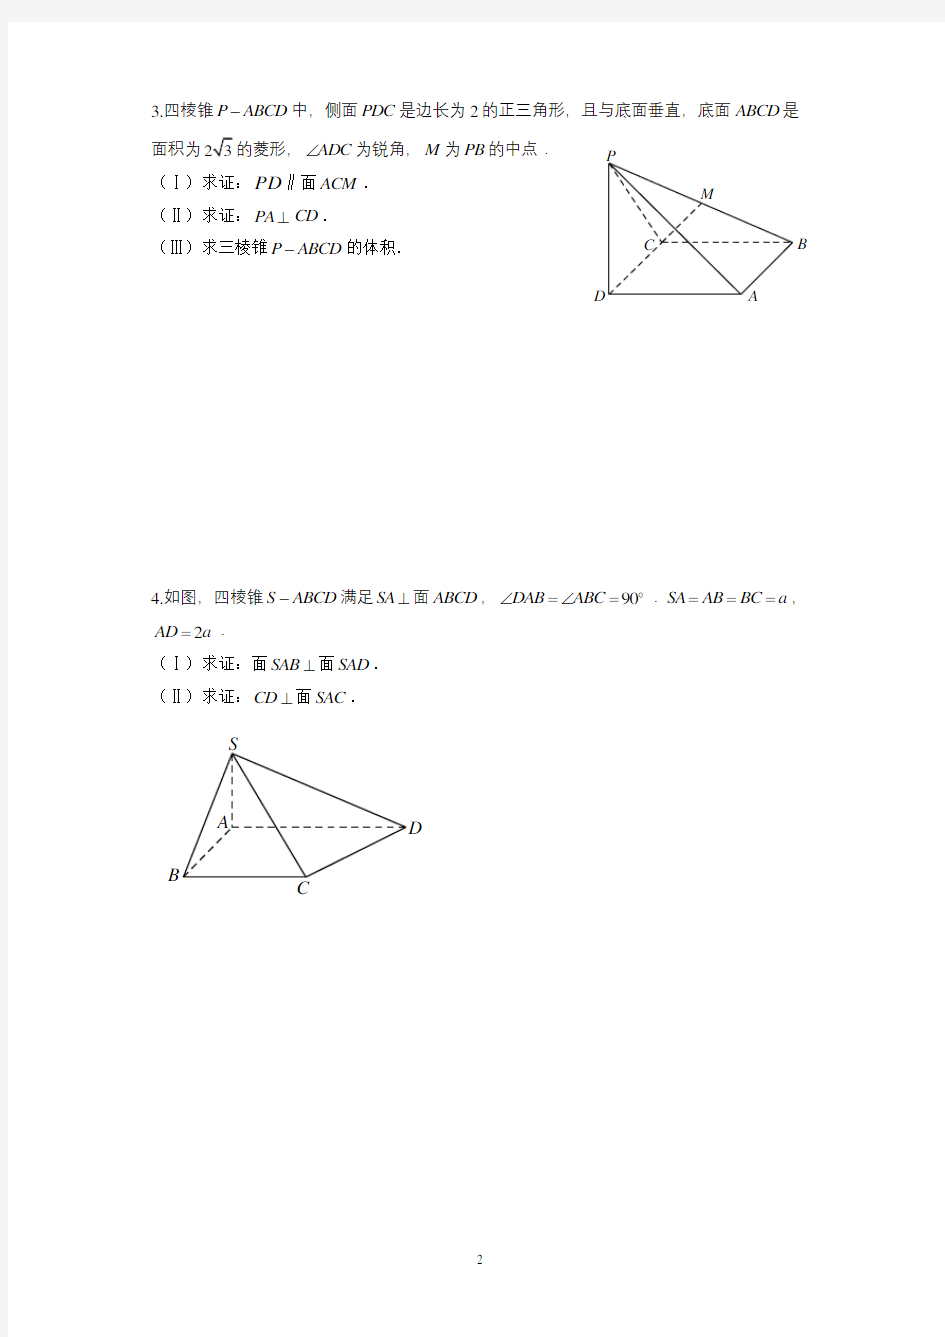 (完整)2019-2020年高考数学大题专题练习——立体几何(一)